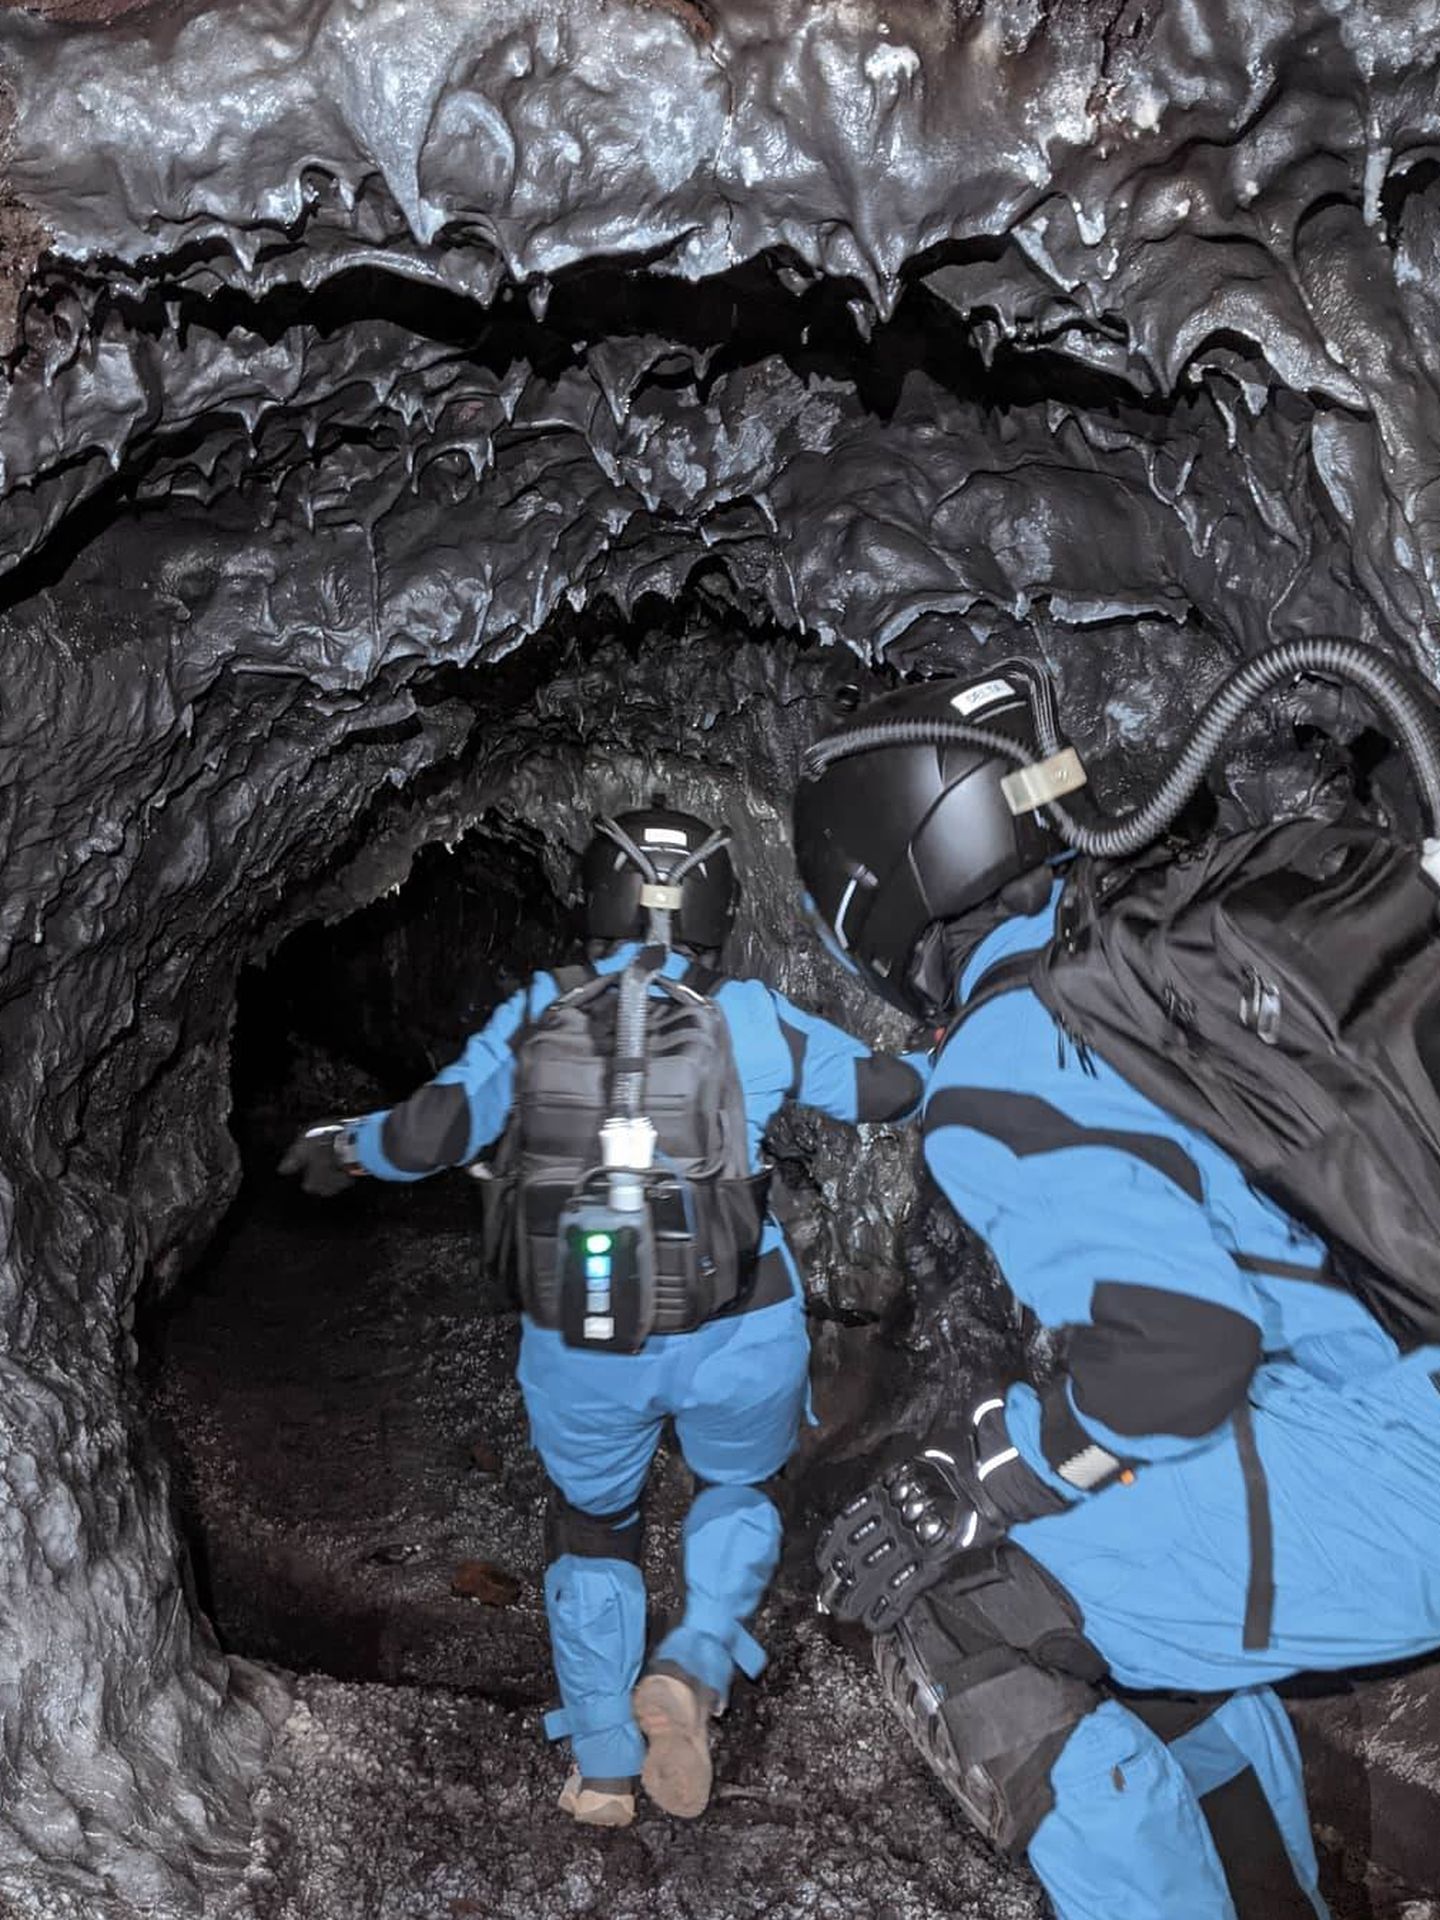 Los túneles pueden provocar claustrofobia. (HI-SEAS)